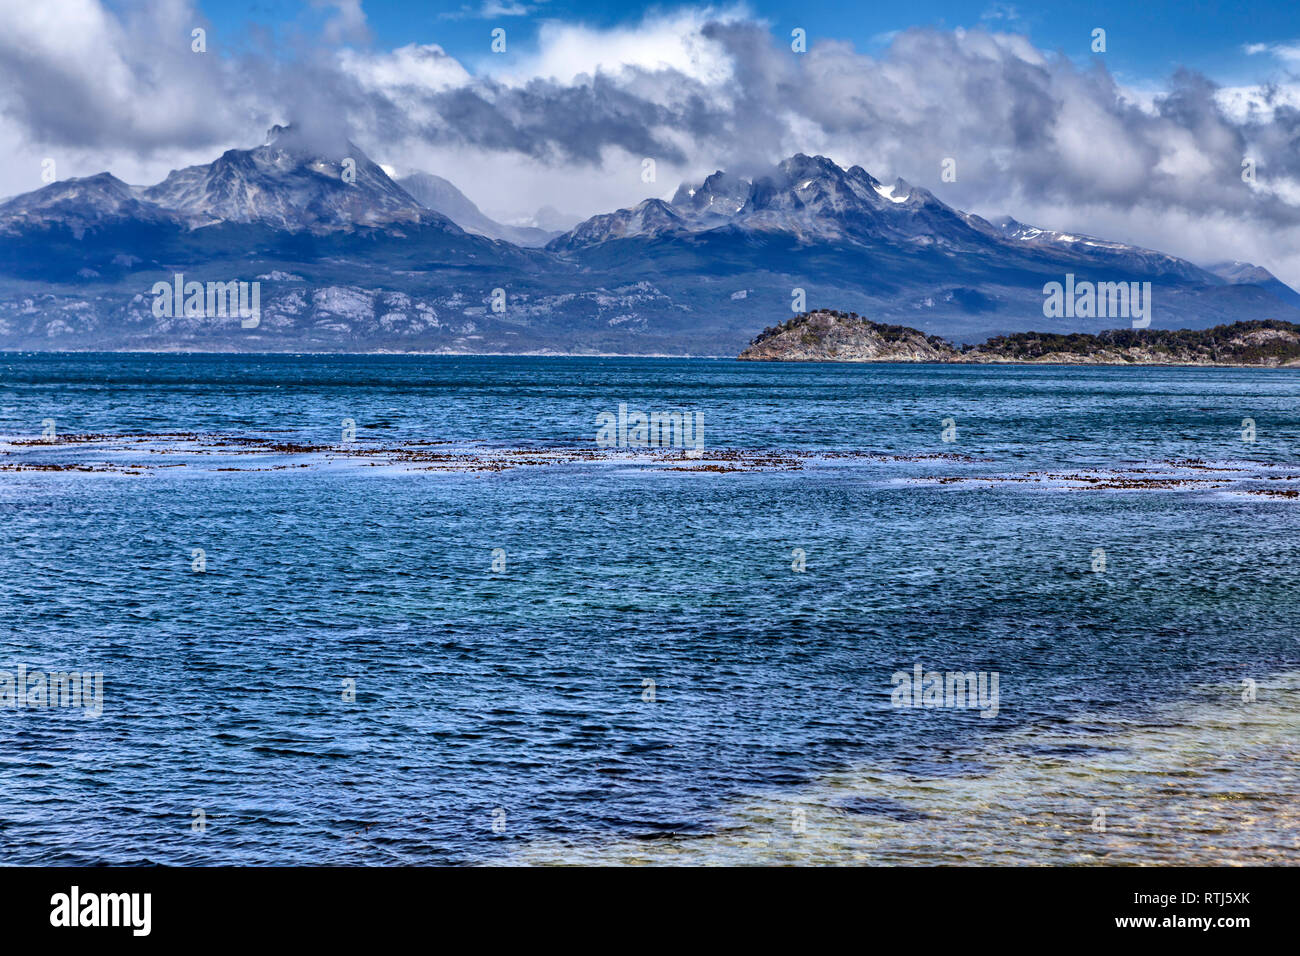 Tierra del Fuego National park, Isla Grande del Tierra del Fuego, Tierra del Fuego, Antartida e Islas del Atlantico Sur, Argentina Stock Photo